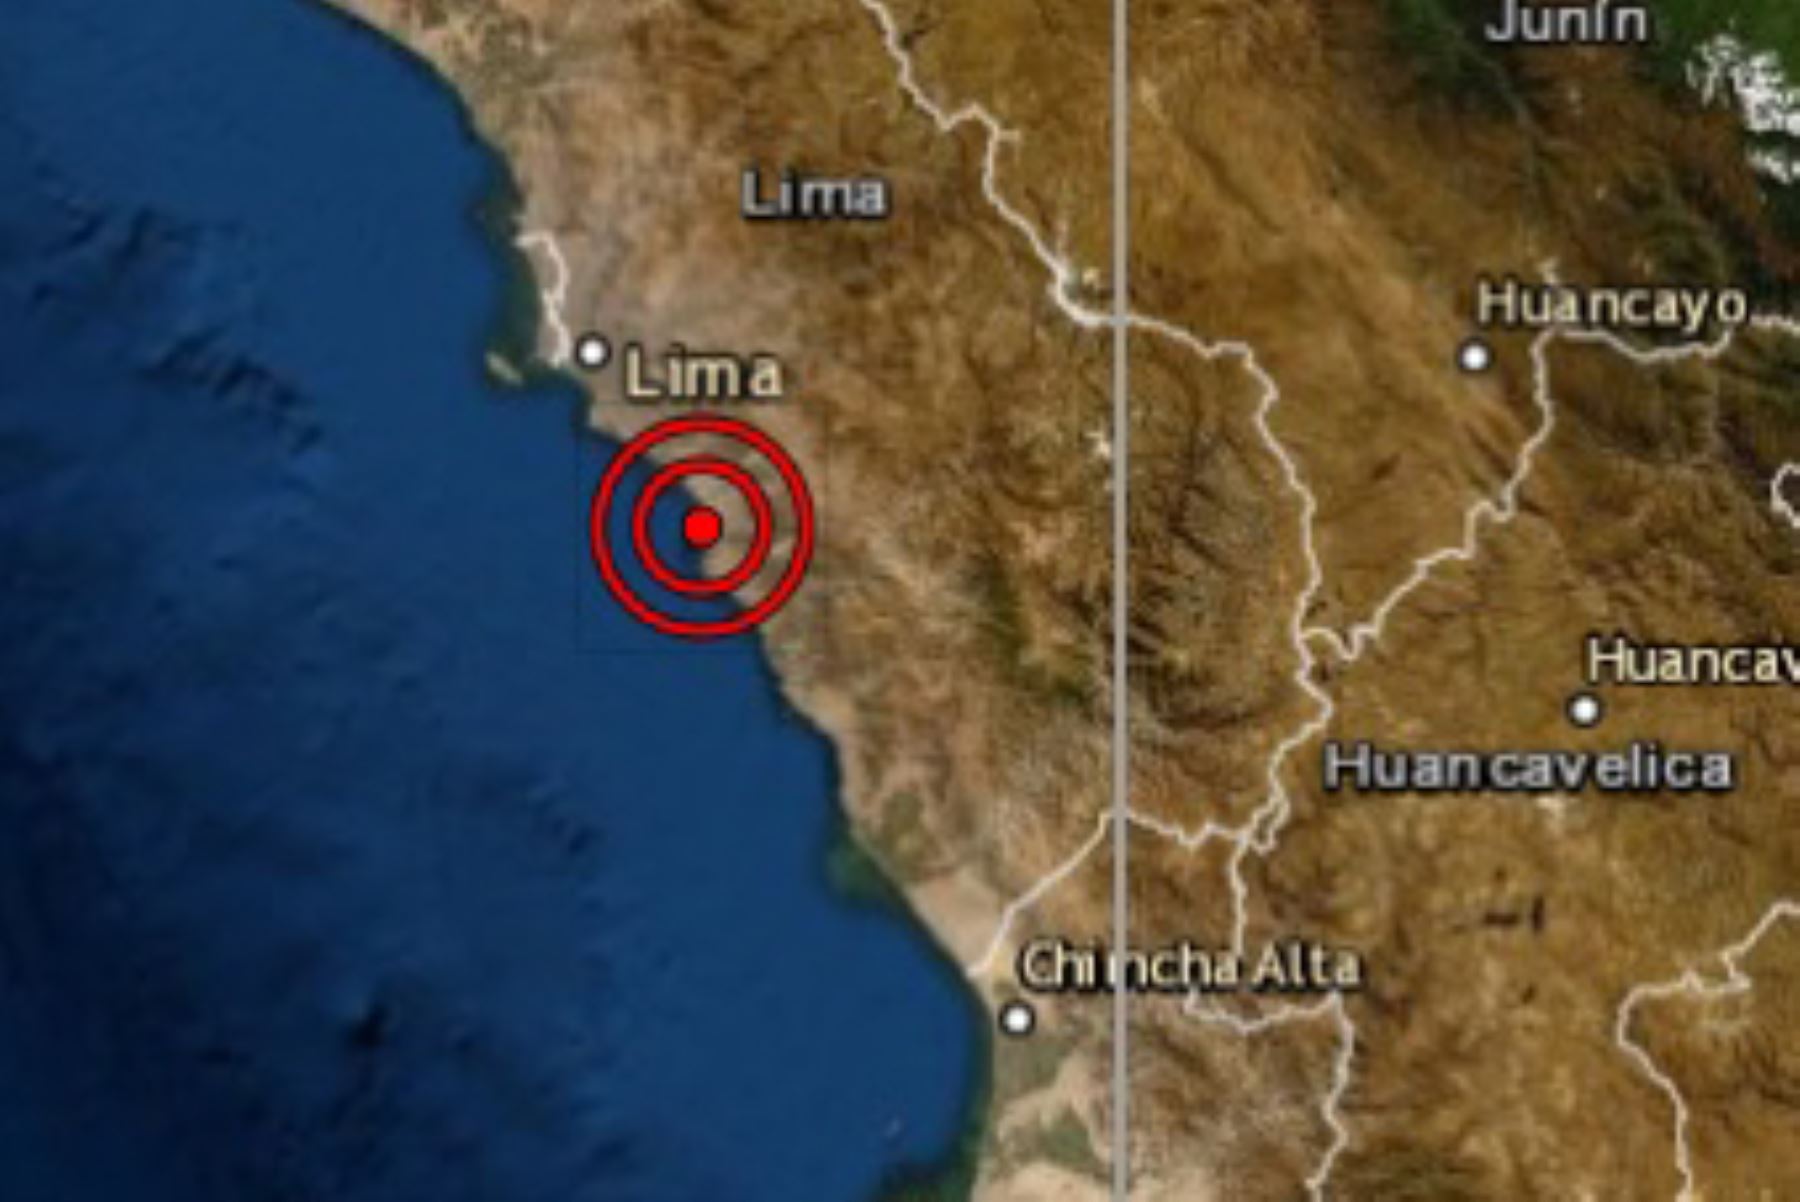 Un sismo de magnitud 3.9 se registró esta madrugada en el distrito de Mala, provincia de Cañete, región Lima Provincias, según informó el Centro Sismológico Nacional del Instituto Geofísico del Perú. ANDINA/Difusión